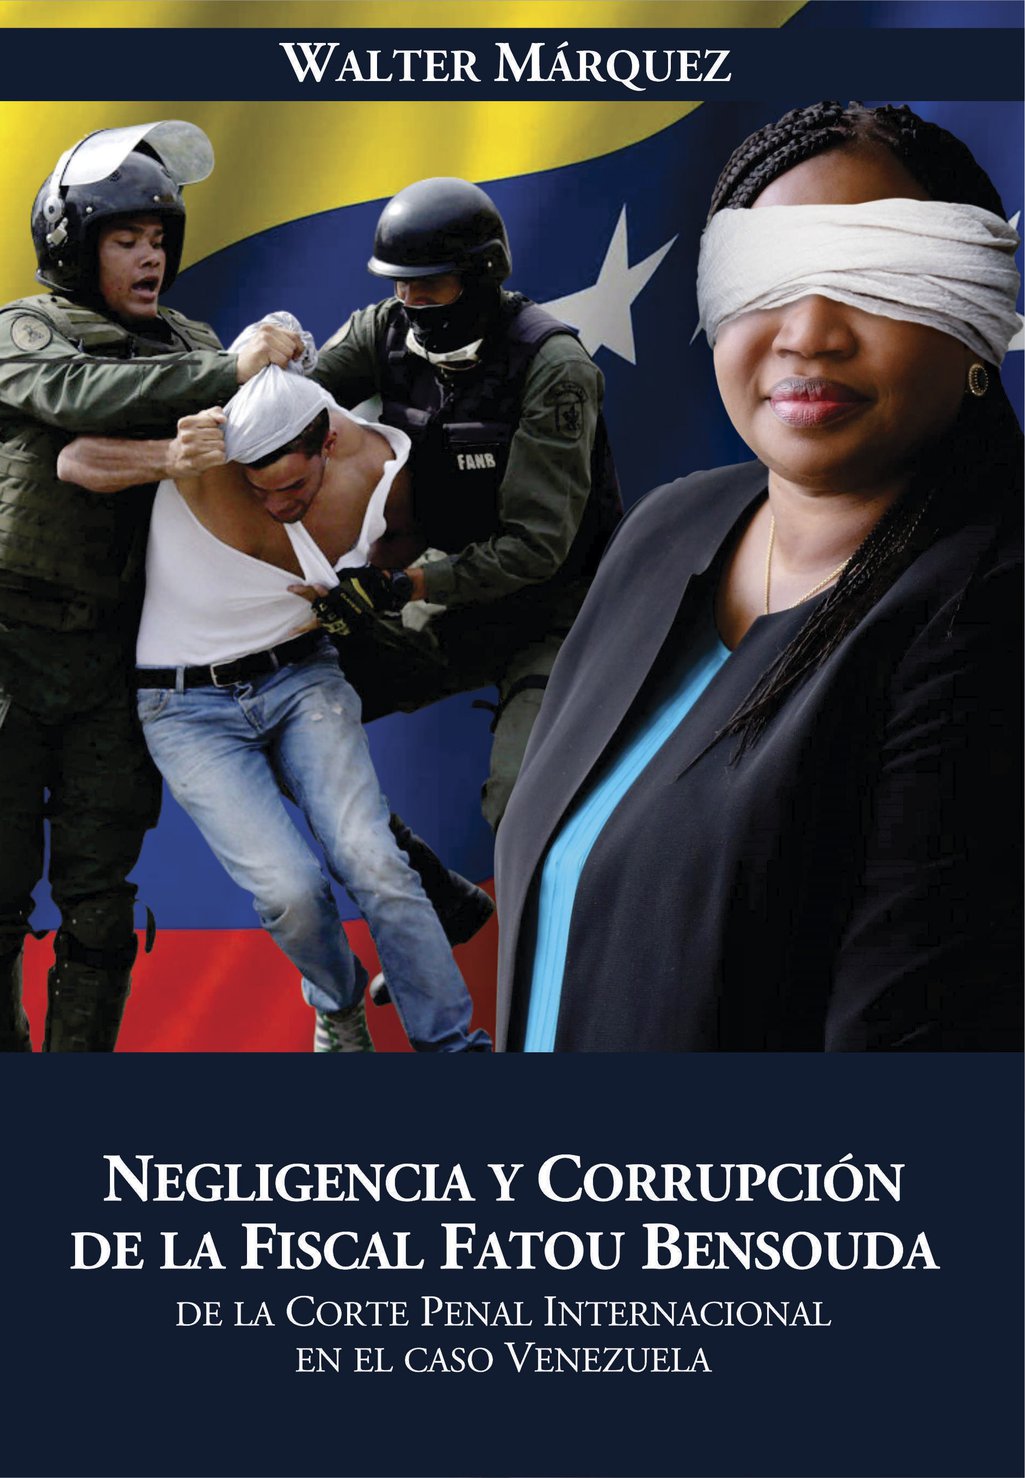 WALTER-MARQUEZ-Portada-Libro-Negligencia-y-Corrupción-12OCT2020.jpg